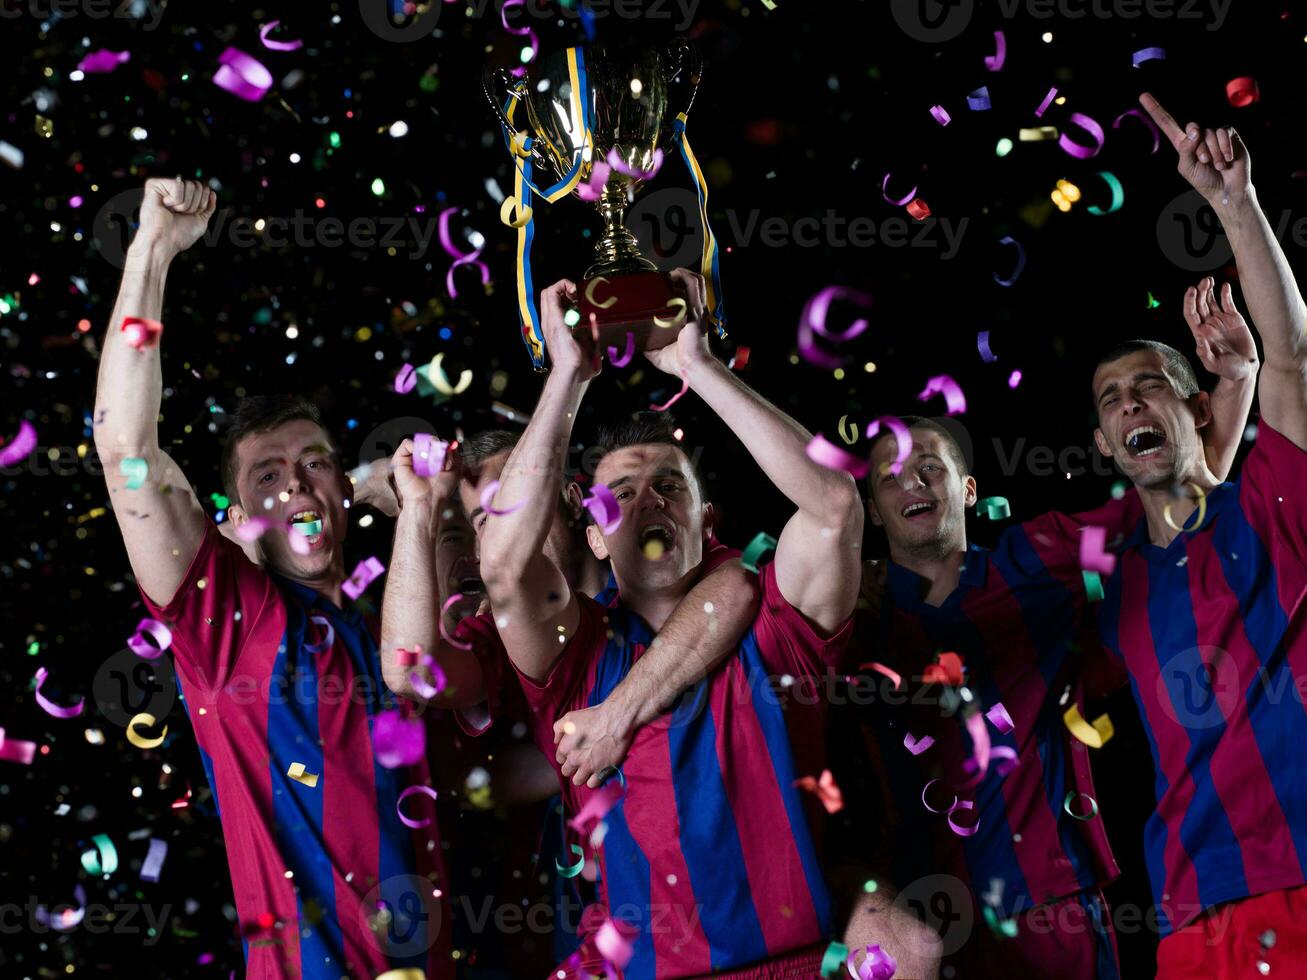 fotbollsspelare firar seger foto